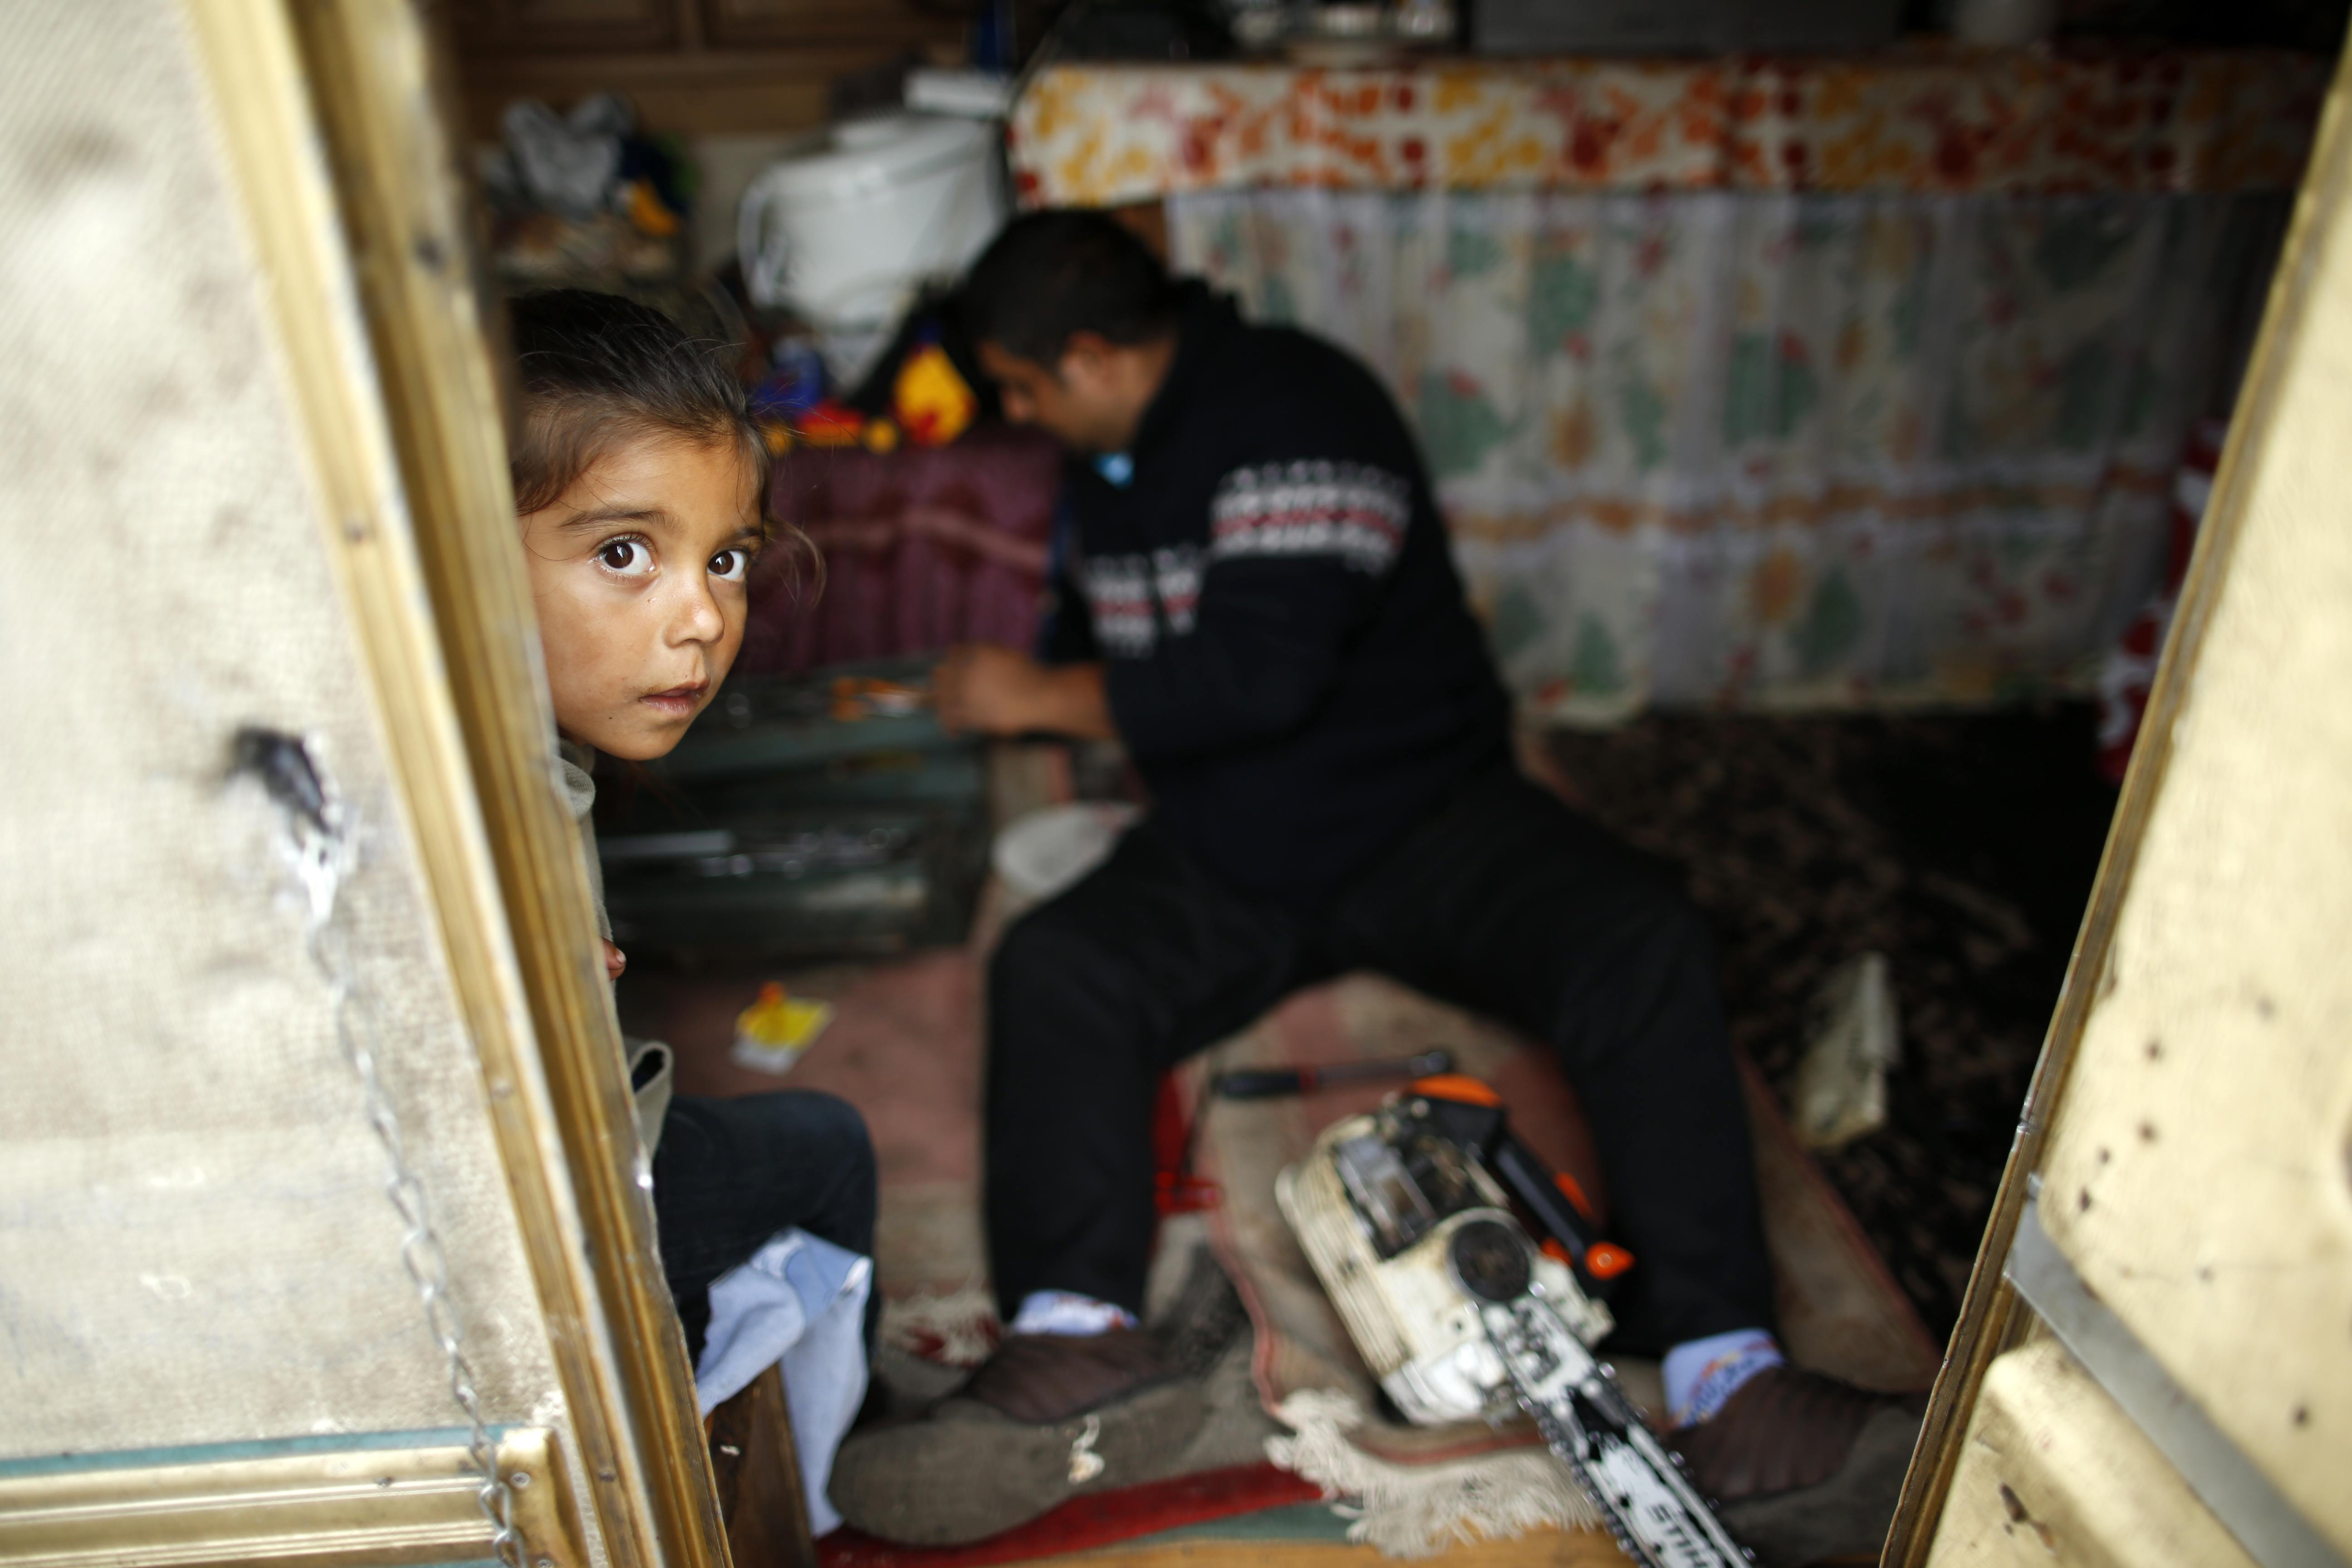 Επιθέσεις ακροδεξιών σε καταυλισμούς Ρομά σε όλη την Ευρώπη, με αφορμή την υπόθεση της μικρής Μαρίας